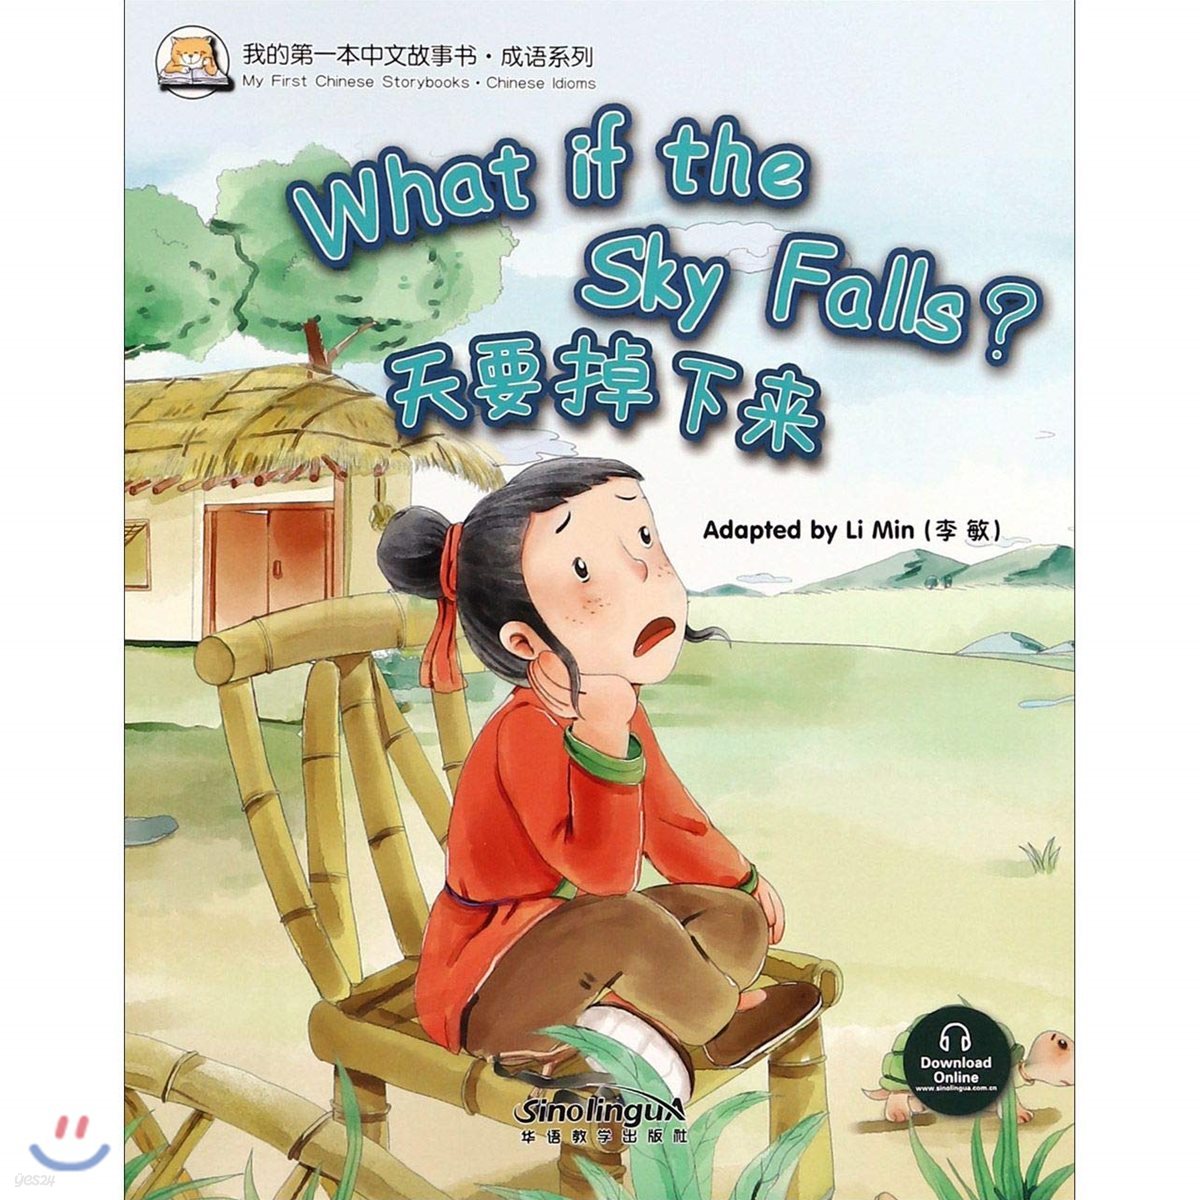 我的第一本中文故事?&#183;成?系列 : 天要掉下? 아적제일본중문고사서&#183;성어계열 : 천요도하래 My First Chinese Storybooks&#183;Chinese Idioms : What if the Sky Falls?